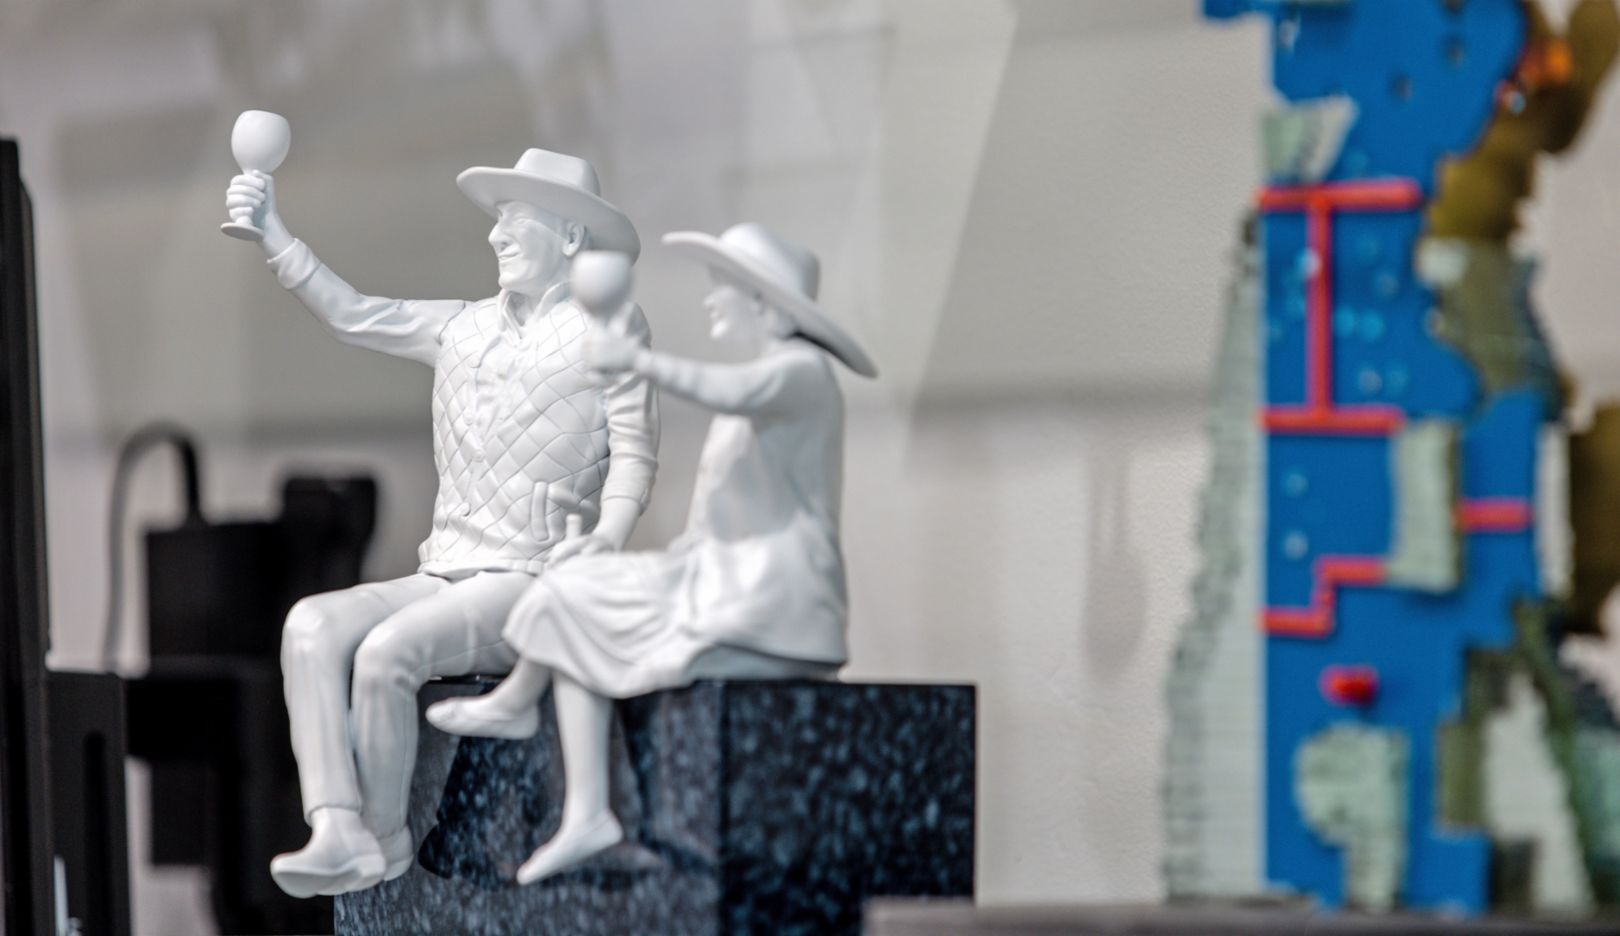 Pionniers de la Napa Valley : cette sculpture rend hommage à Robert Mondavi et Margrit Biever Mondavi. Cette photo en montre une version miniaturisée. Dans l’originale, le couple est installé sur le toit de l’institut culinaire d’Amérique.